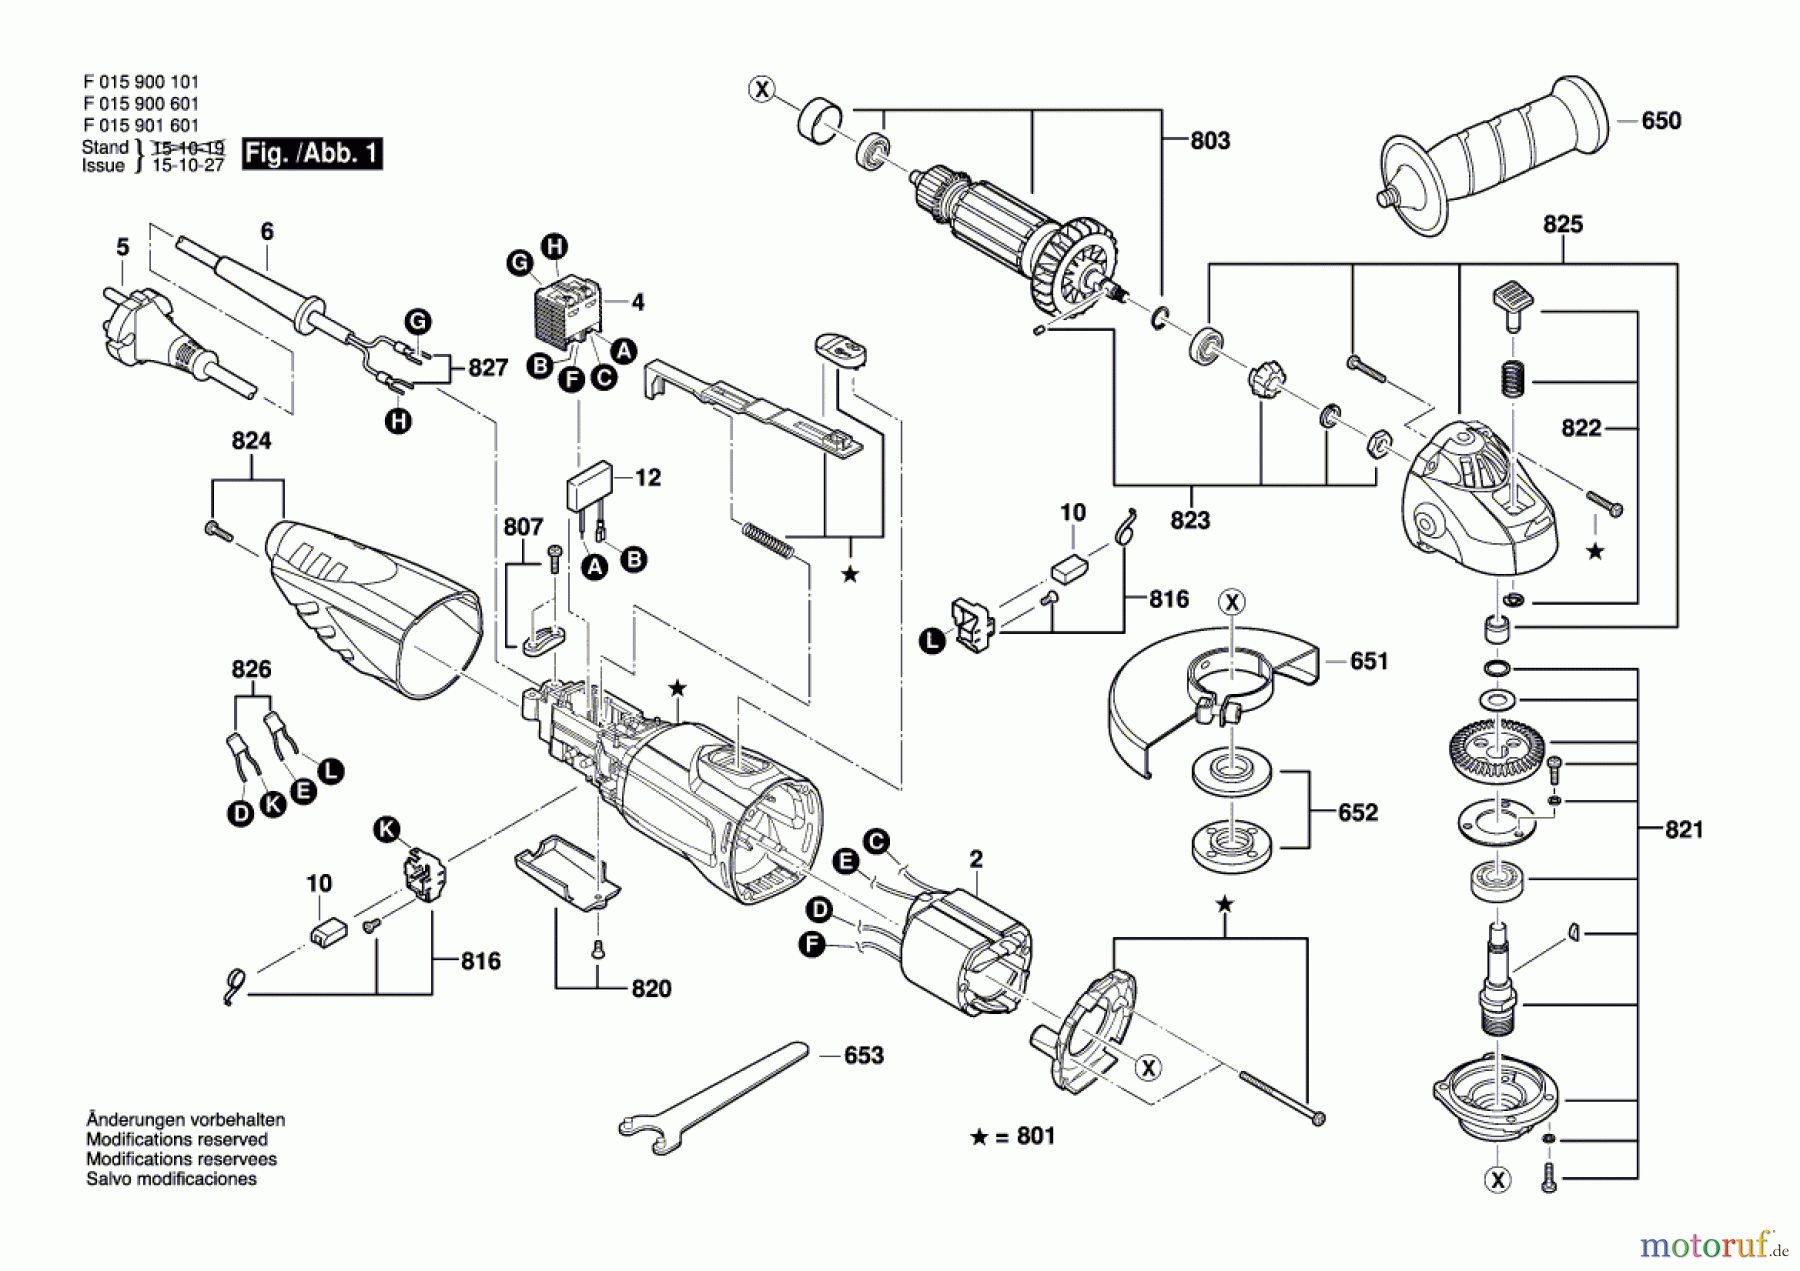  Bosch Werkzeug Pw-Winkelschleifer 9016 Seite 1